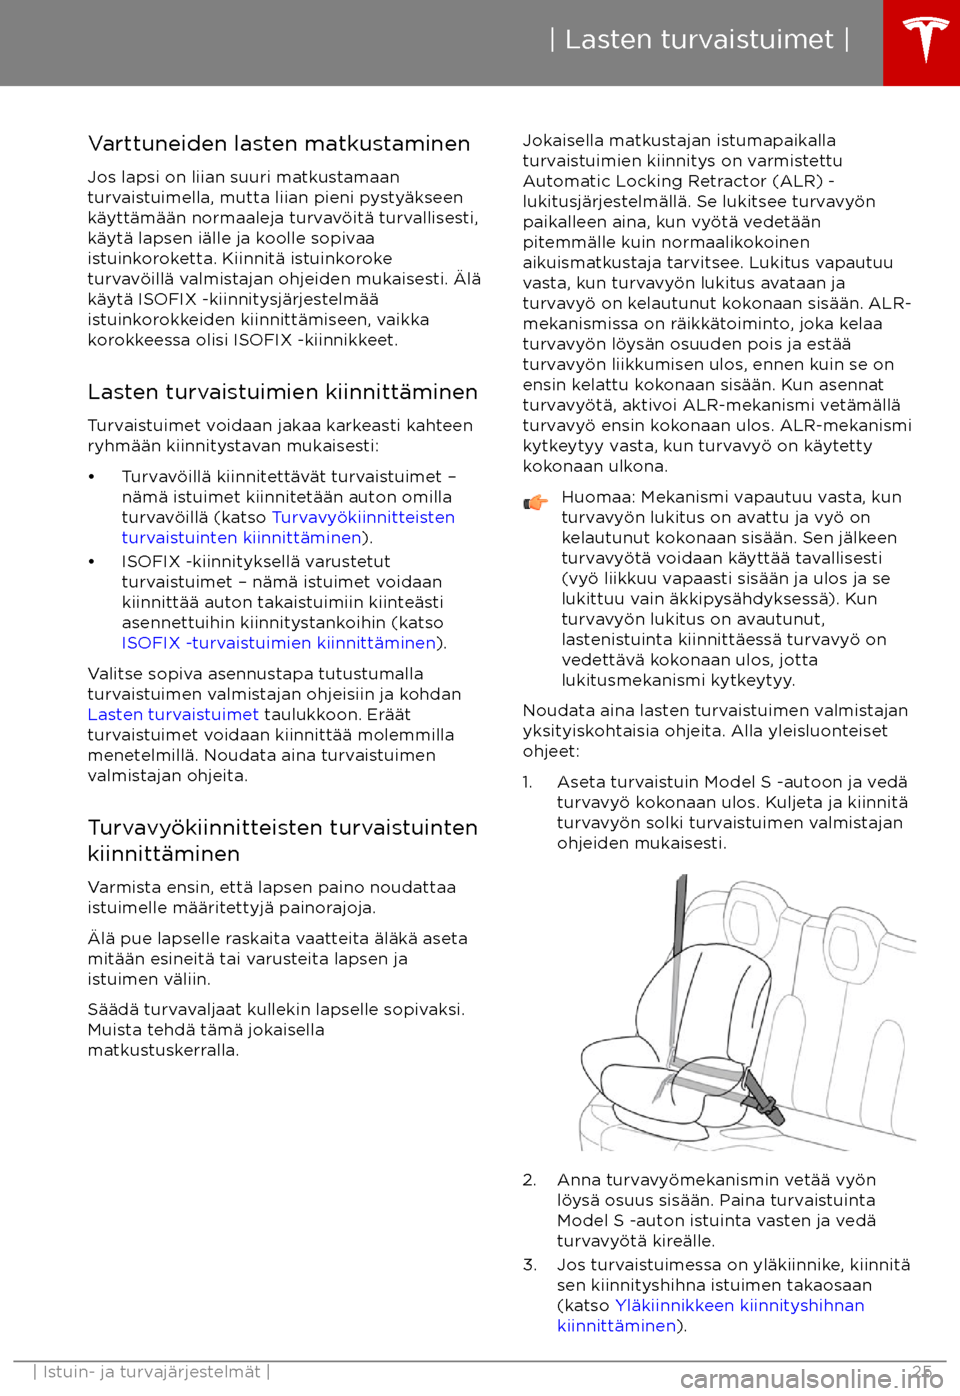 TESLA MODEL S 2017  Omistajan käsikirja (in Finnish) Varttuneiden lasten matkustaminenJos lapsi on liian suuri matkustamaan
turvaistuimella, mutta liian pieni pysty